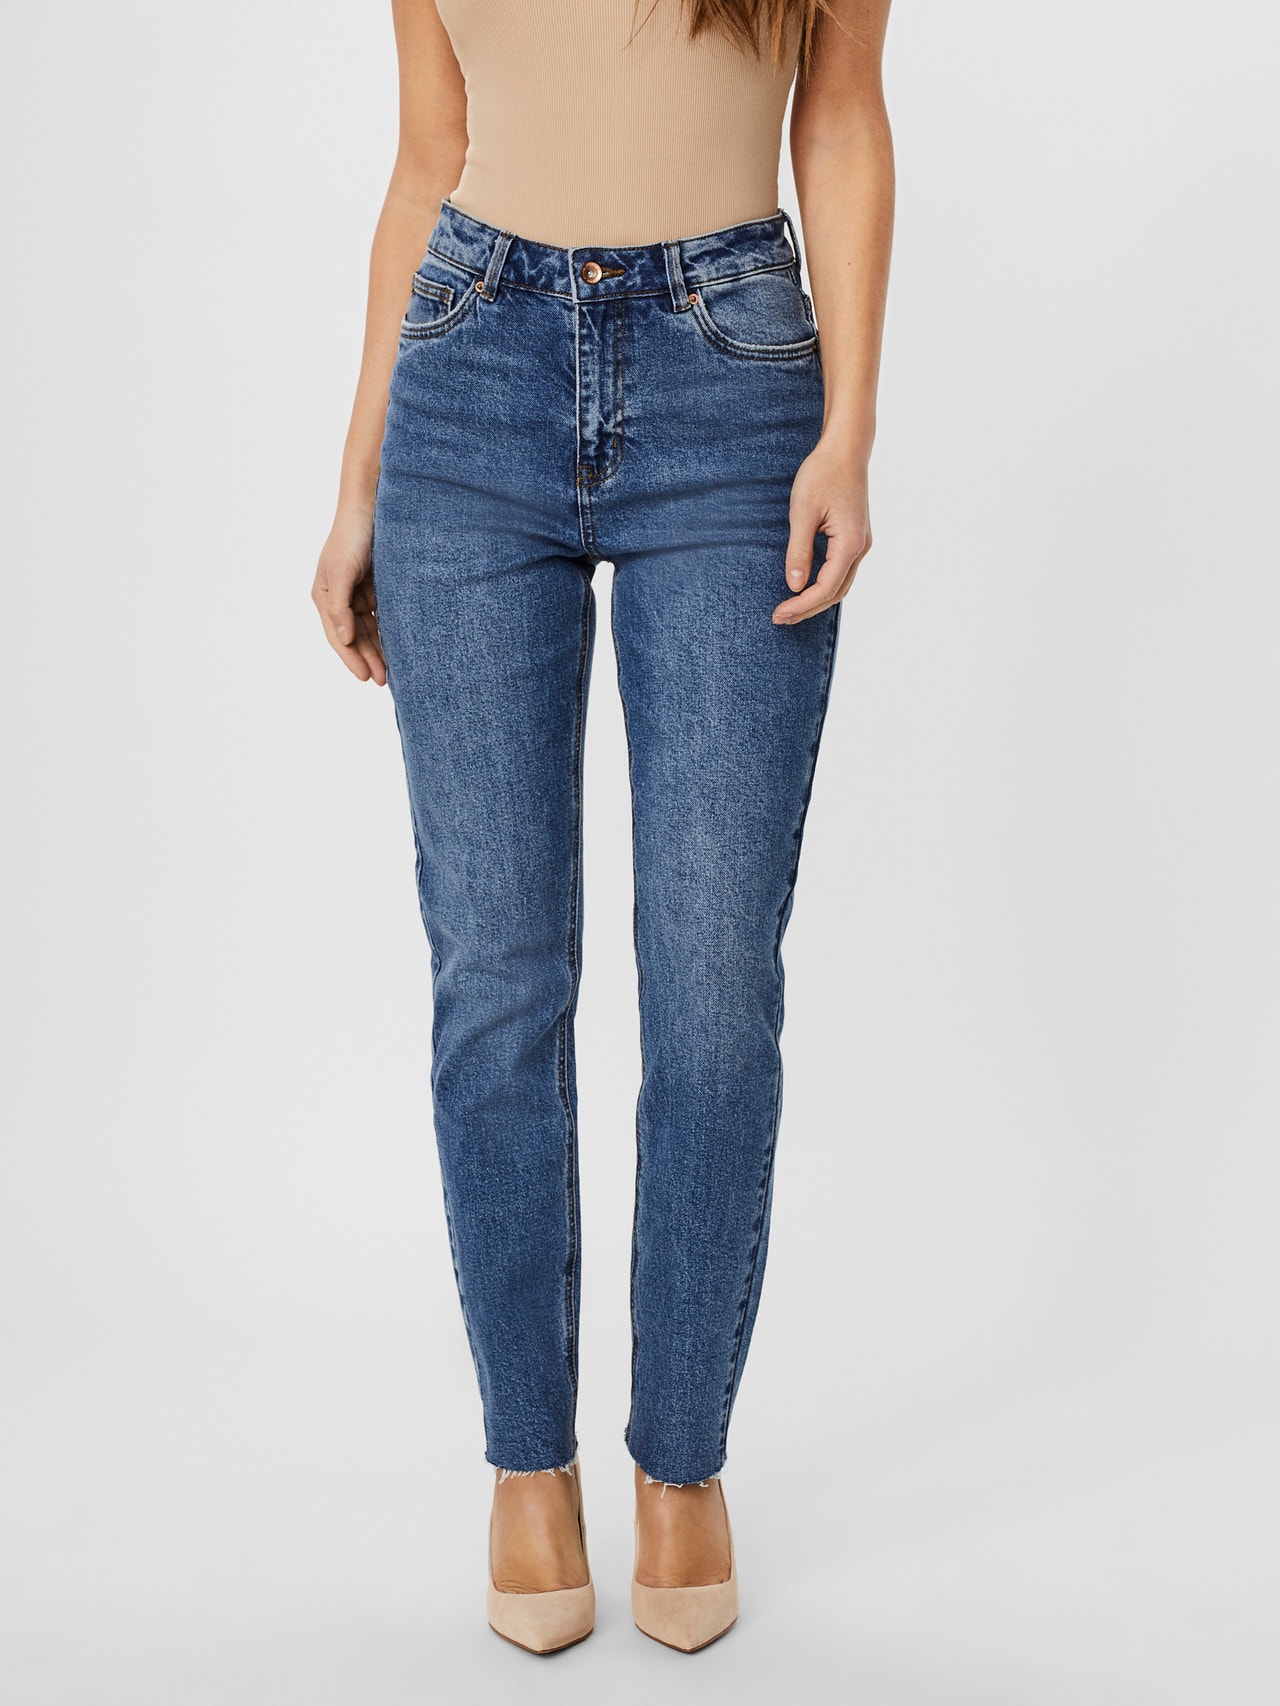 Vero Moda VMBRENDA Straight Fit Jeans -Medium Blue Denim - 10248825